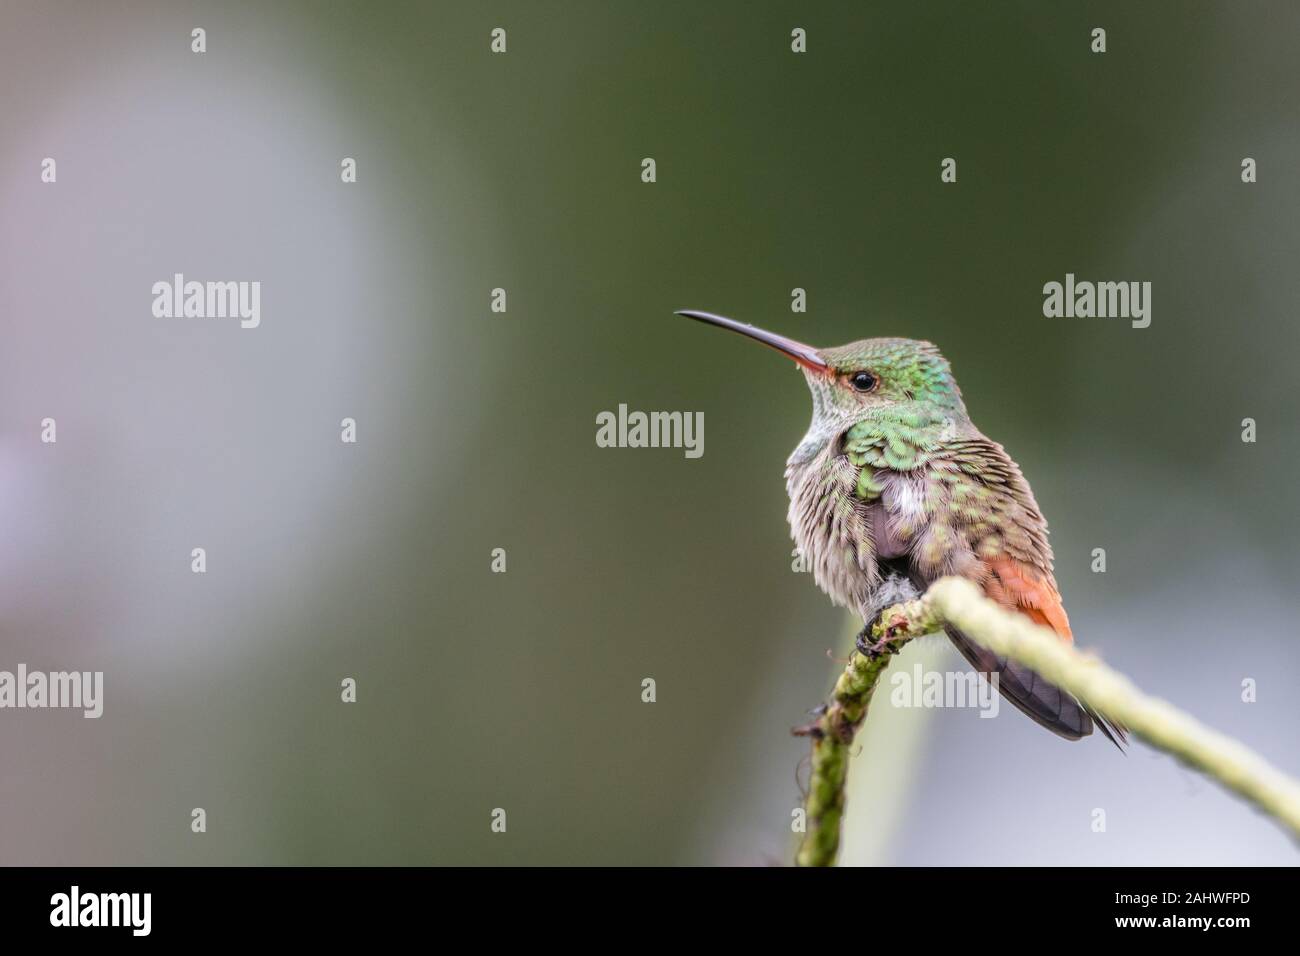 A rufous-tailed hummingbird (Amazilia tzacatl) perches on a branch in Laguna del Lagarto, Costa Rica. Stock Photo